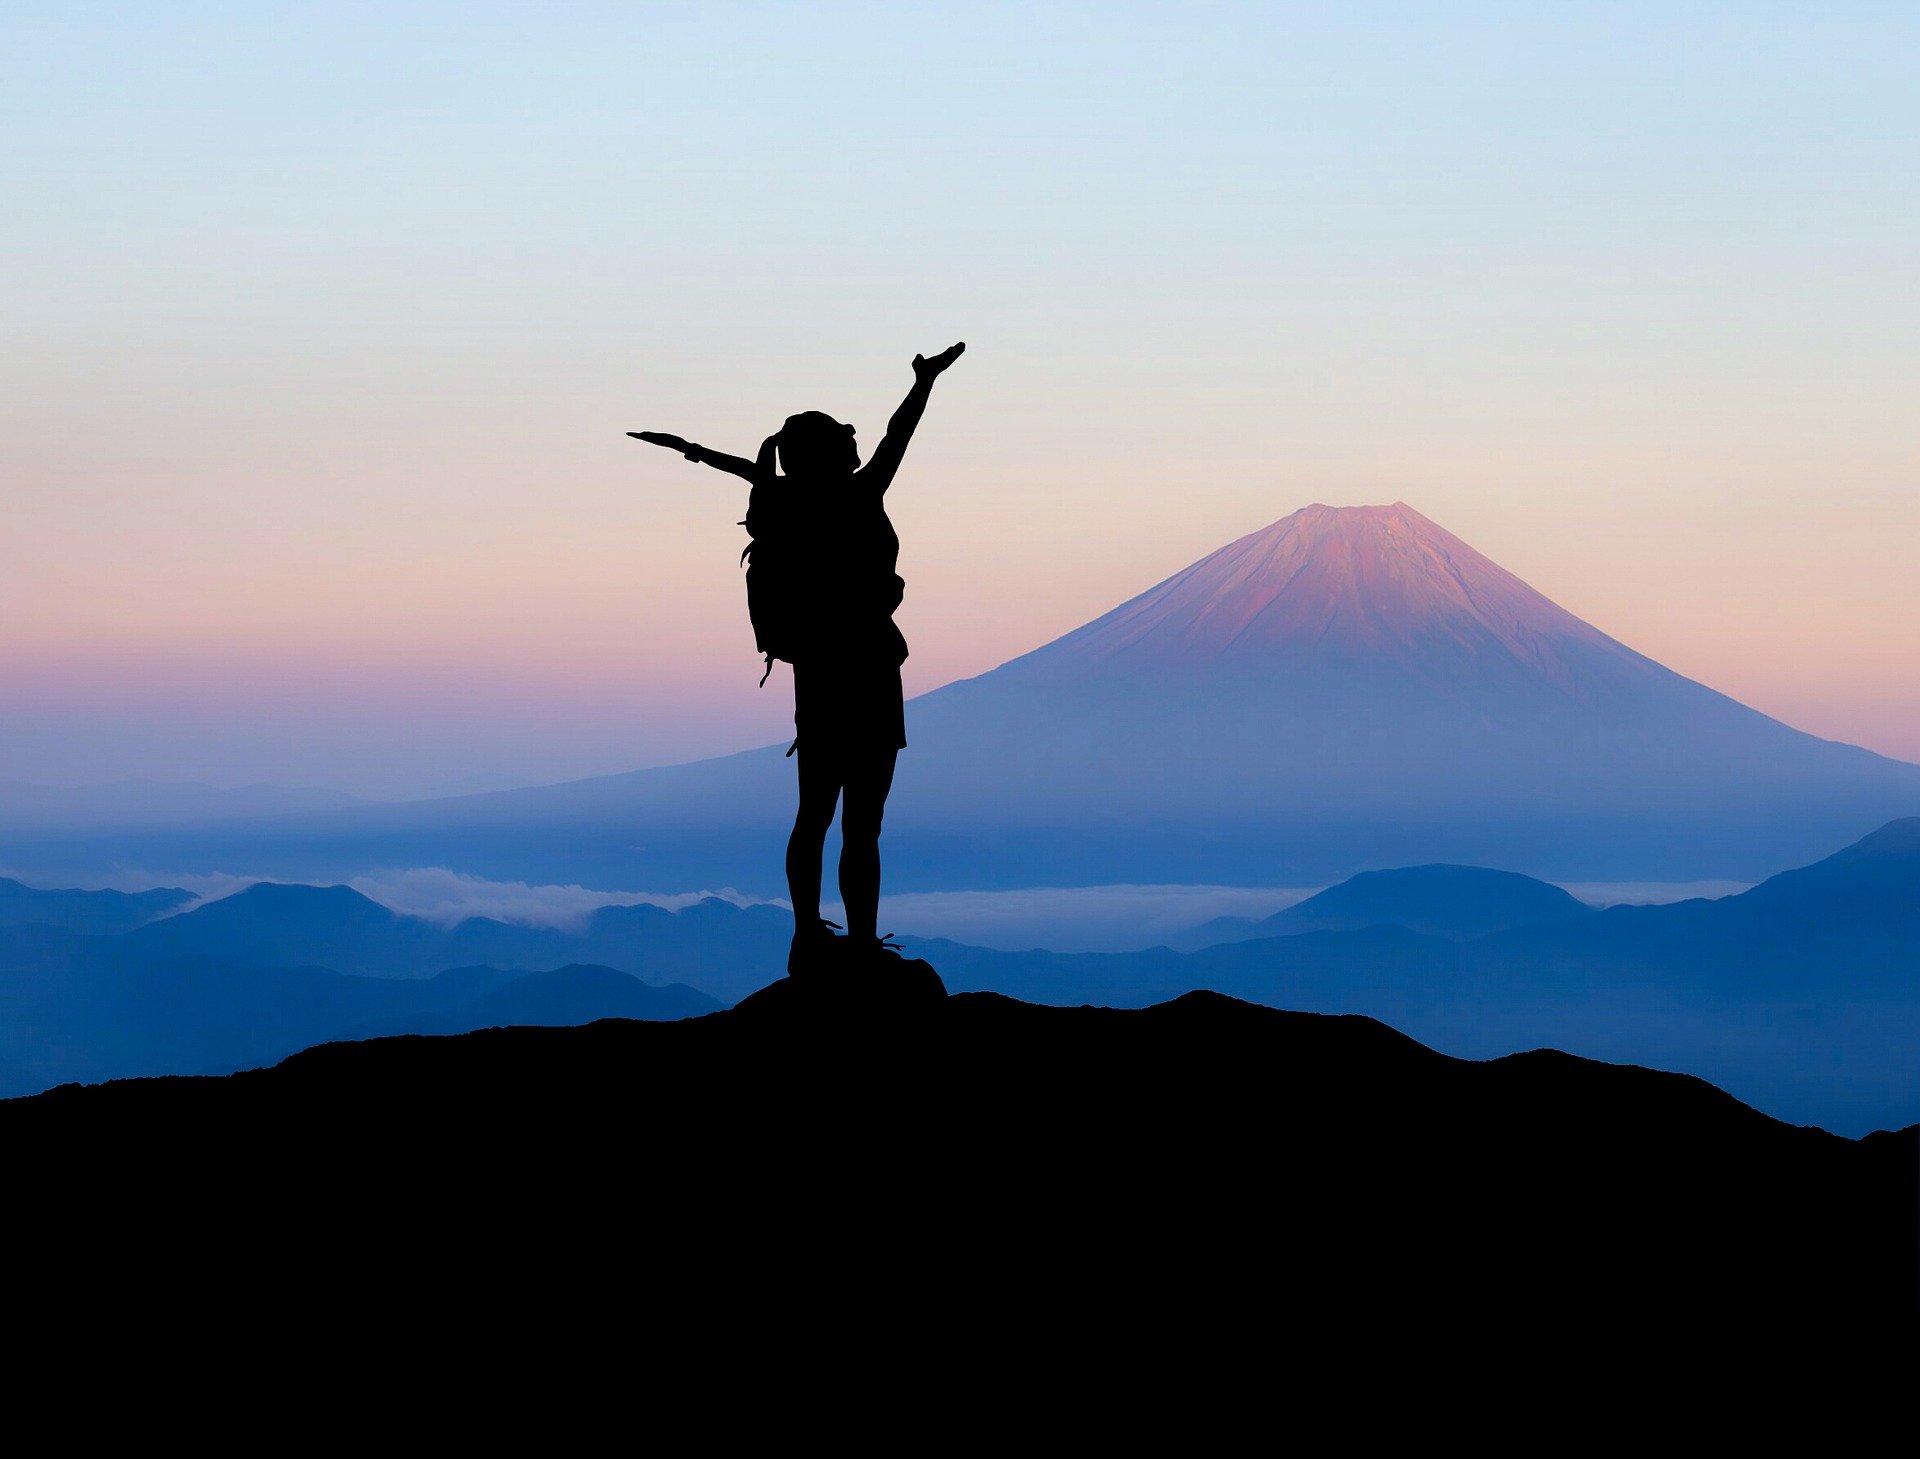 Une personne en haut d'une montagne qui a utilisé son potentiel de réussite pour atteindre son objectif.